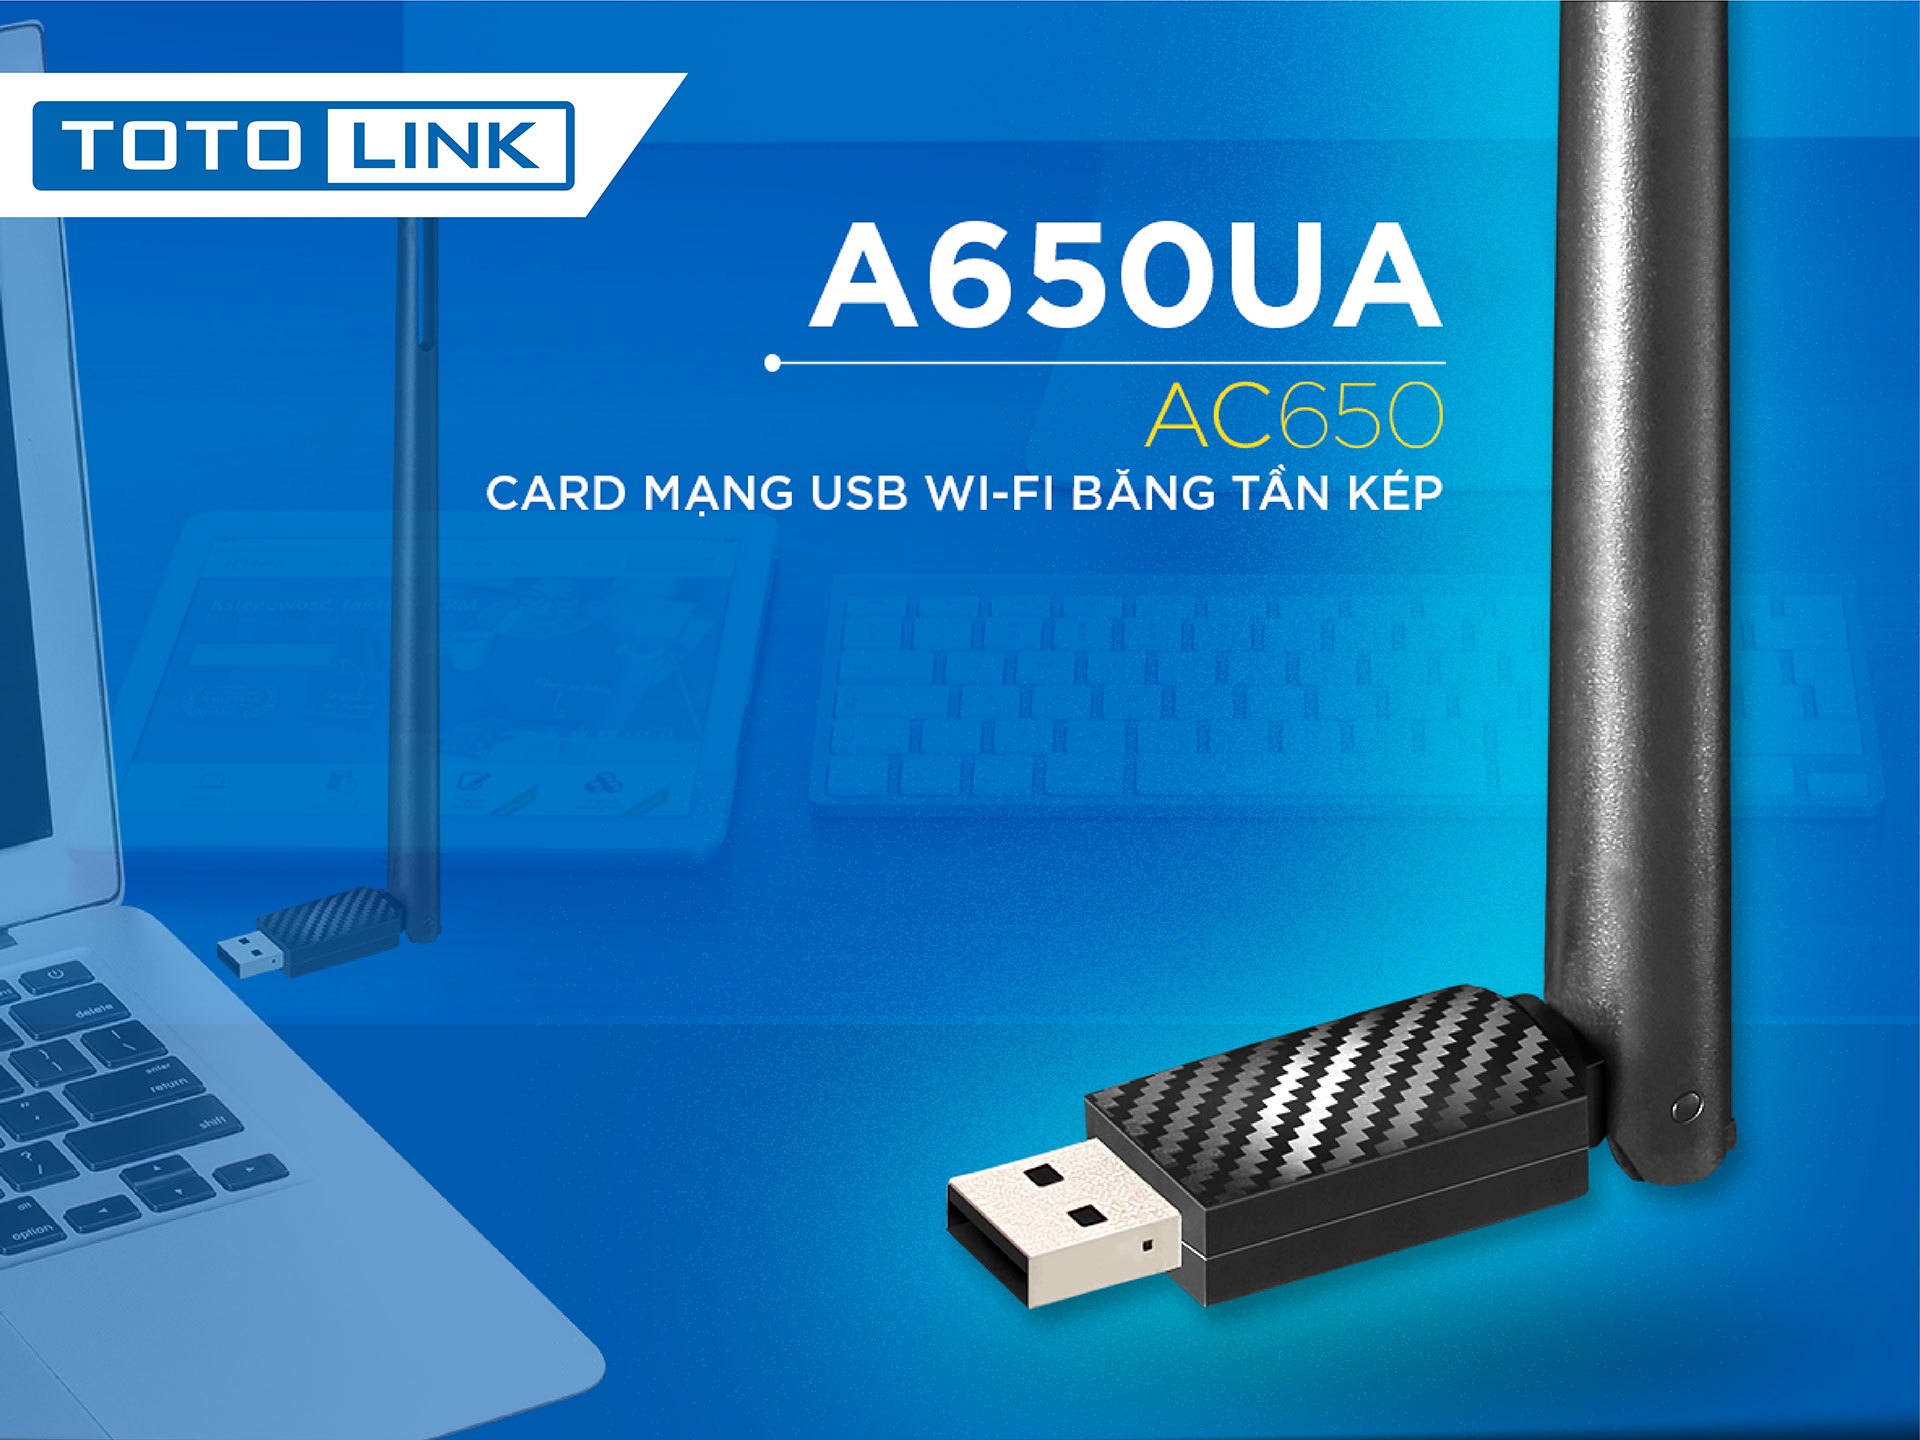 USB Wifi Totolink Dual Band AC650 A650UA